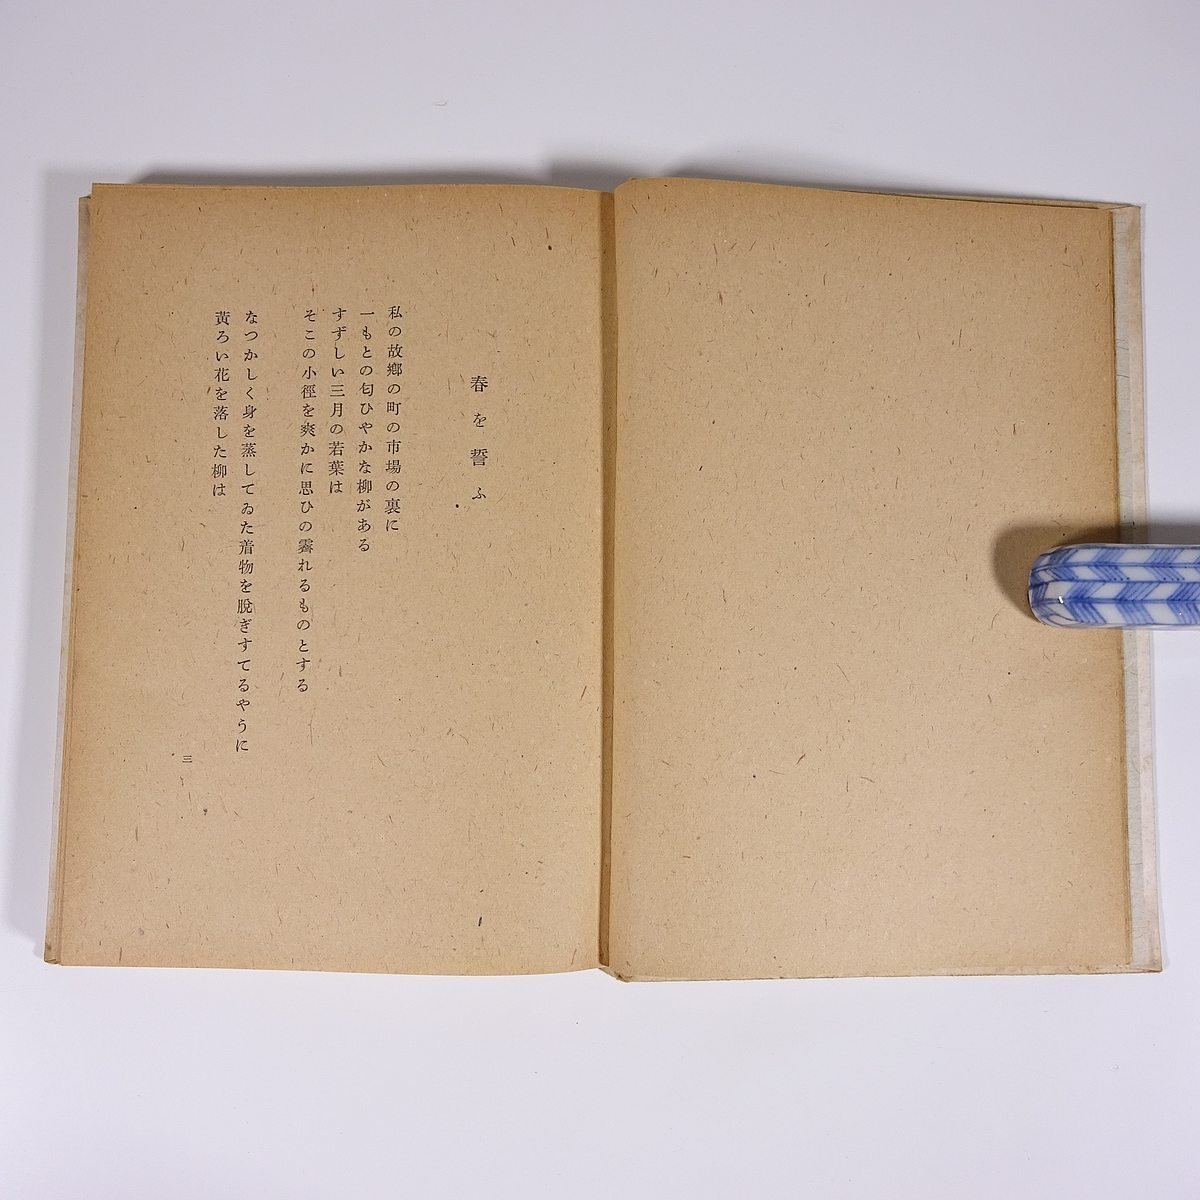  поэзия сборник гора . Noma Hiroshi * Fuji правильный .*... Akira . книжный магазин Showa 2 три год 1948 старинная книга первая версия монография литература литературное искусство поэзия 